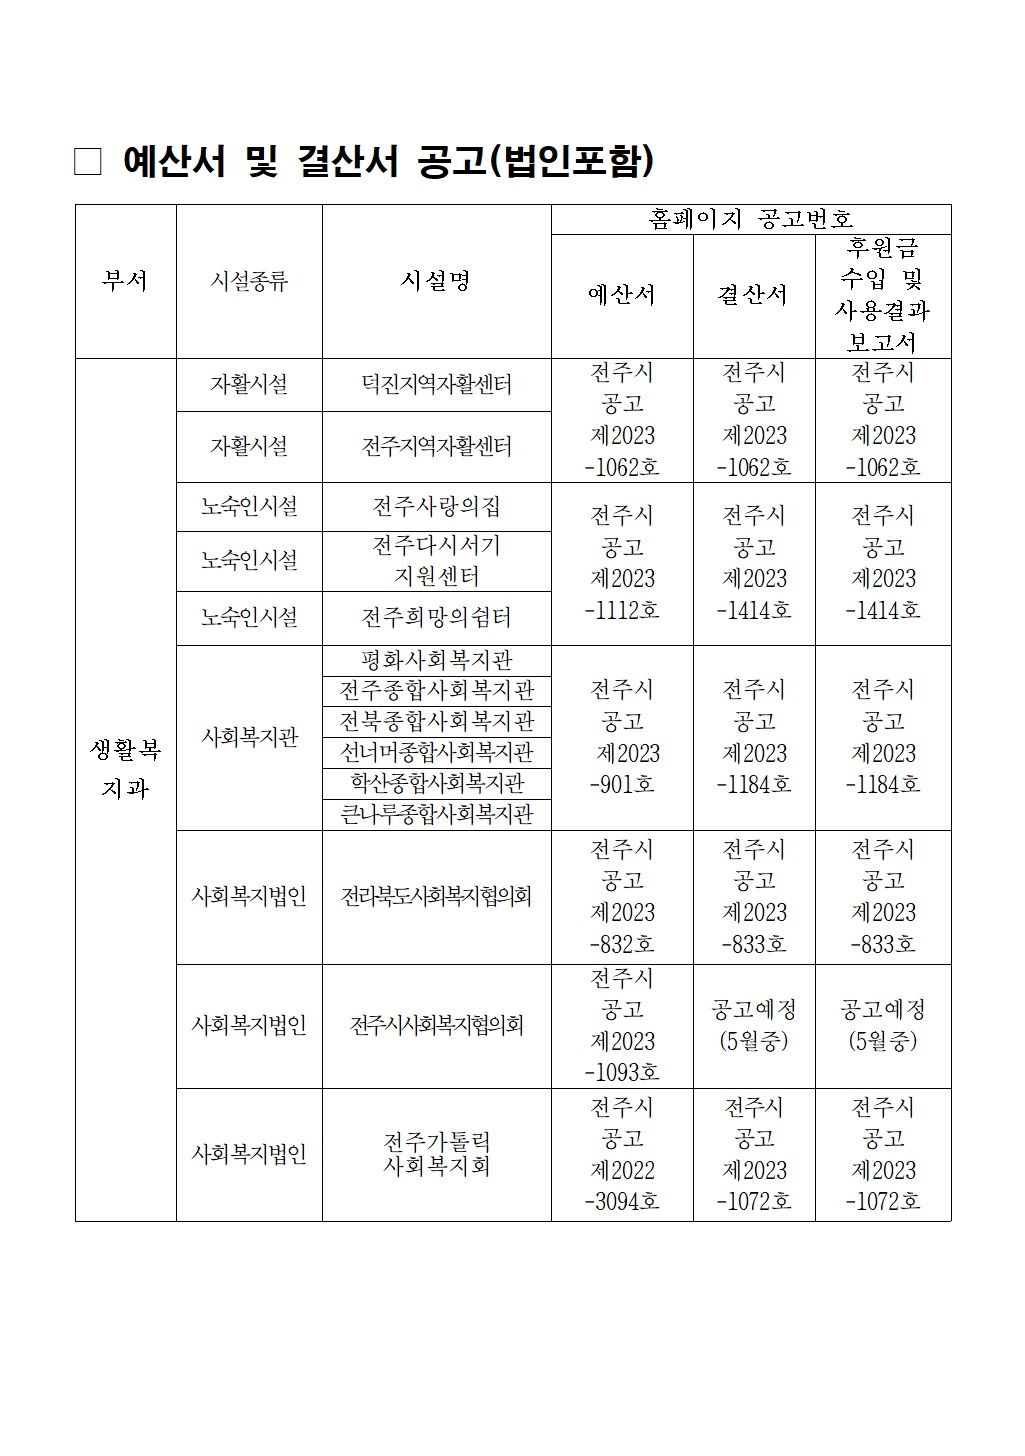 3.사회복지시설(법인)공고현황-생활복지과_1.jpg